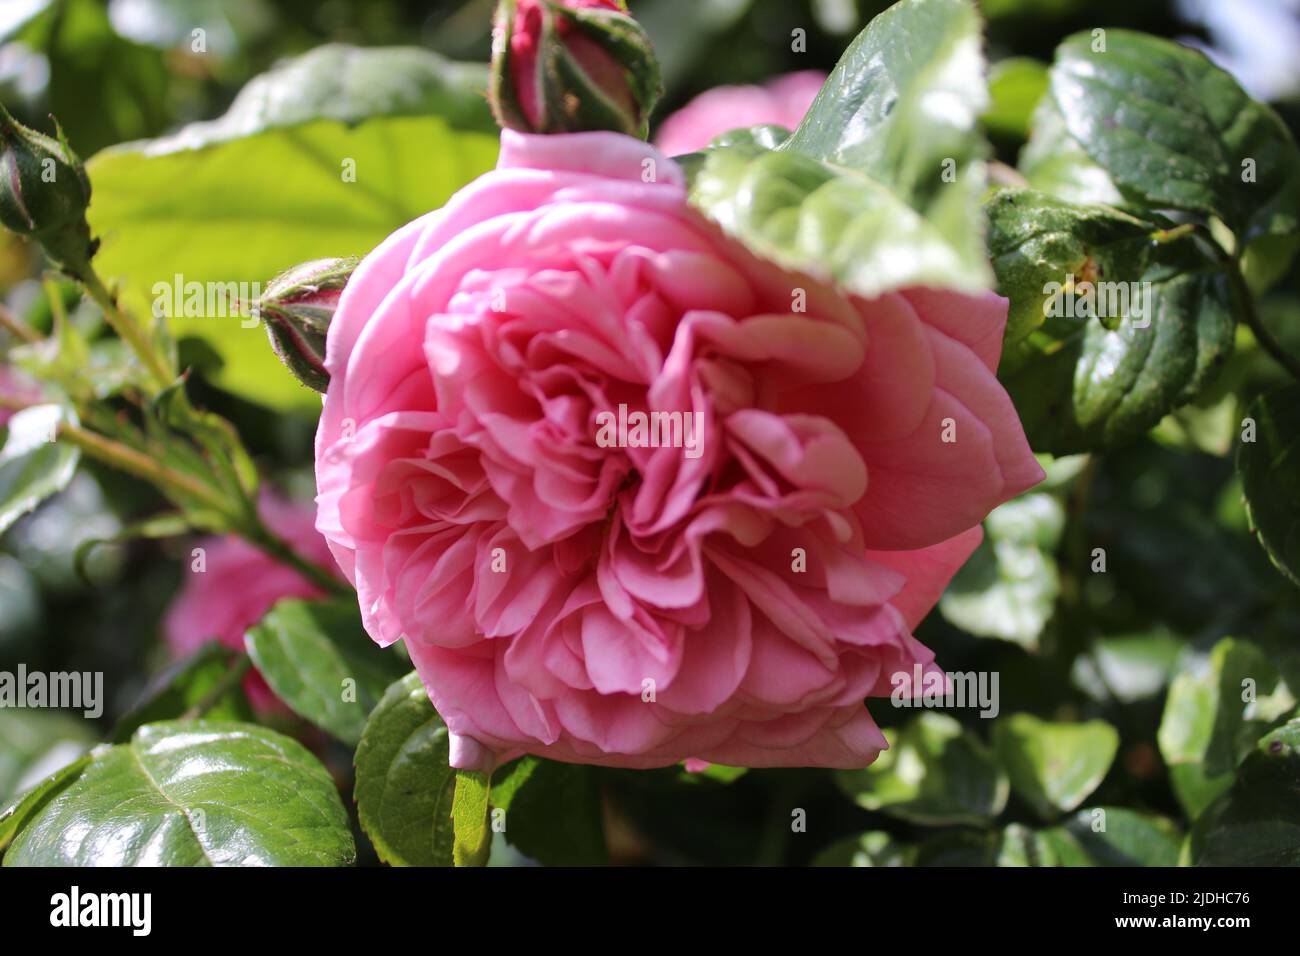 Roses en gros plan. Photographie de la Reine des fleurs. Un arbre broussaillé aux fleurs roses. Les Rosebuds sont entourés de feuilles vertes. Roses épineuses. Banque D'Images